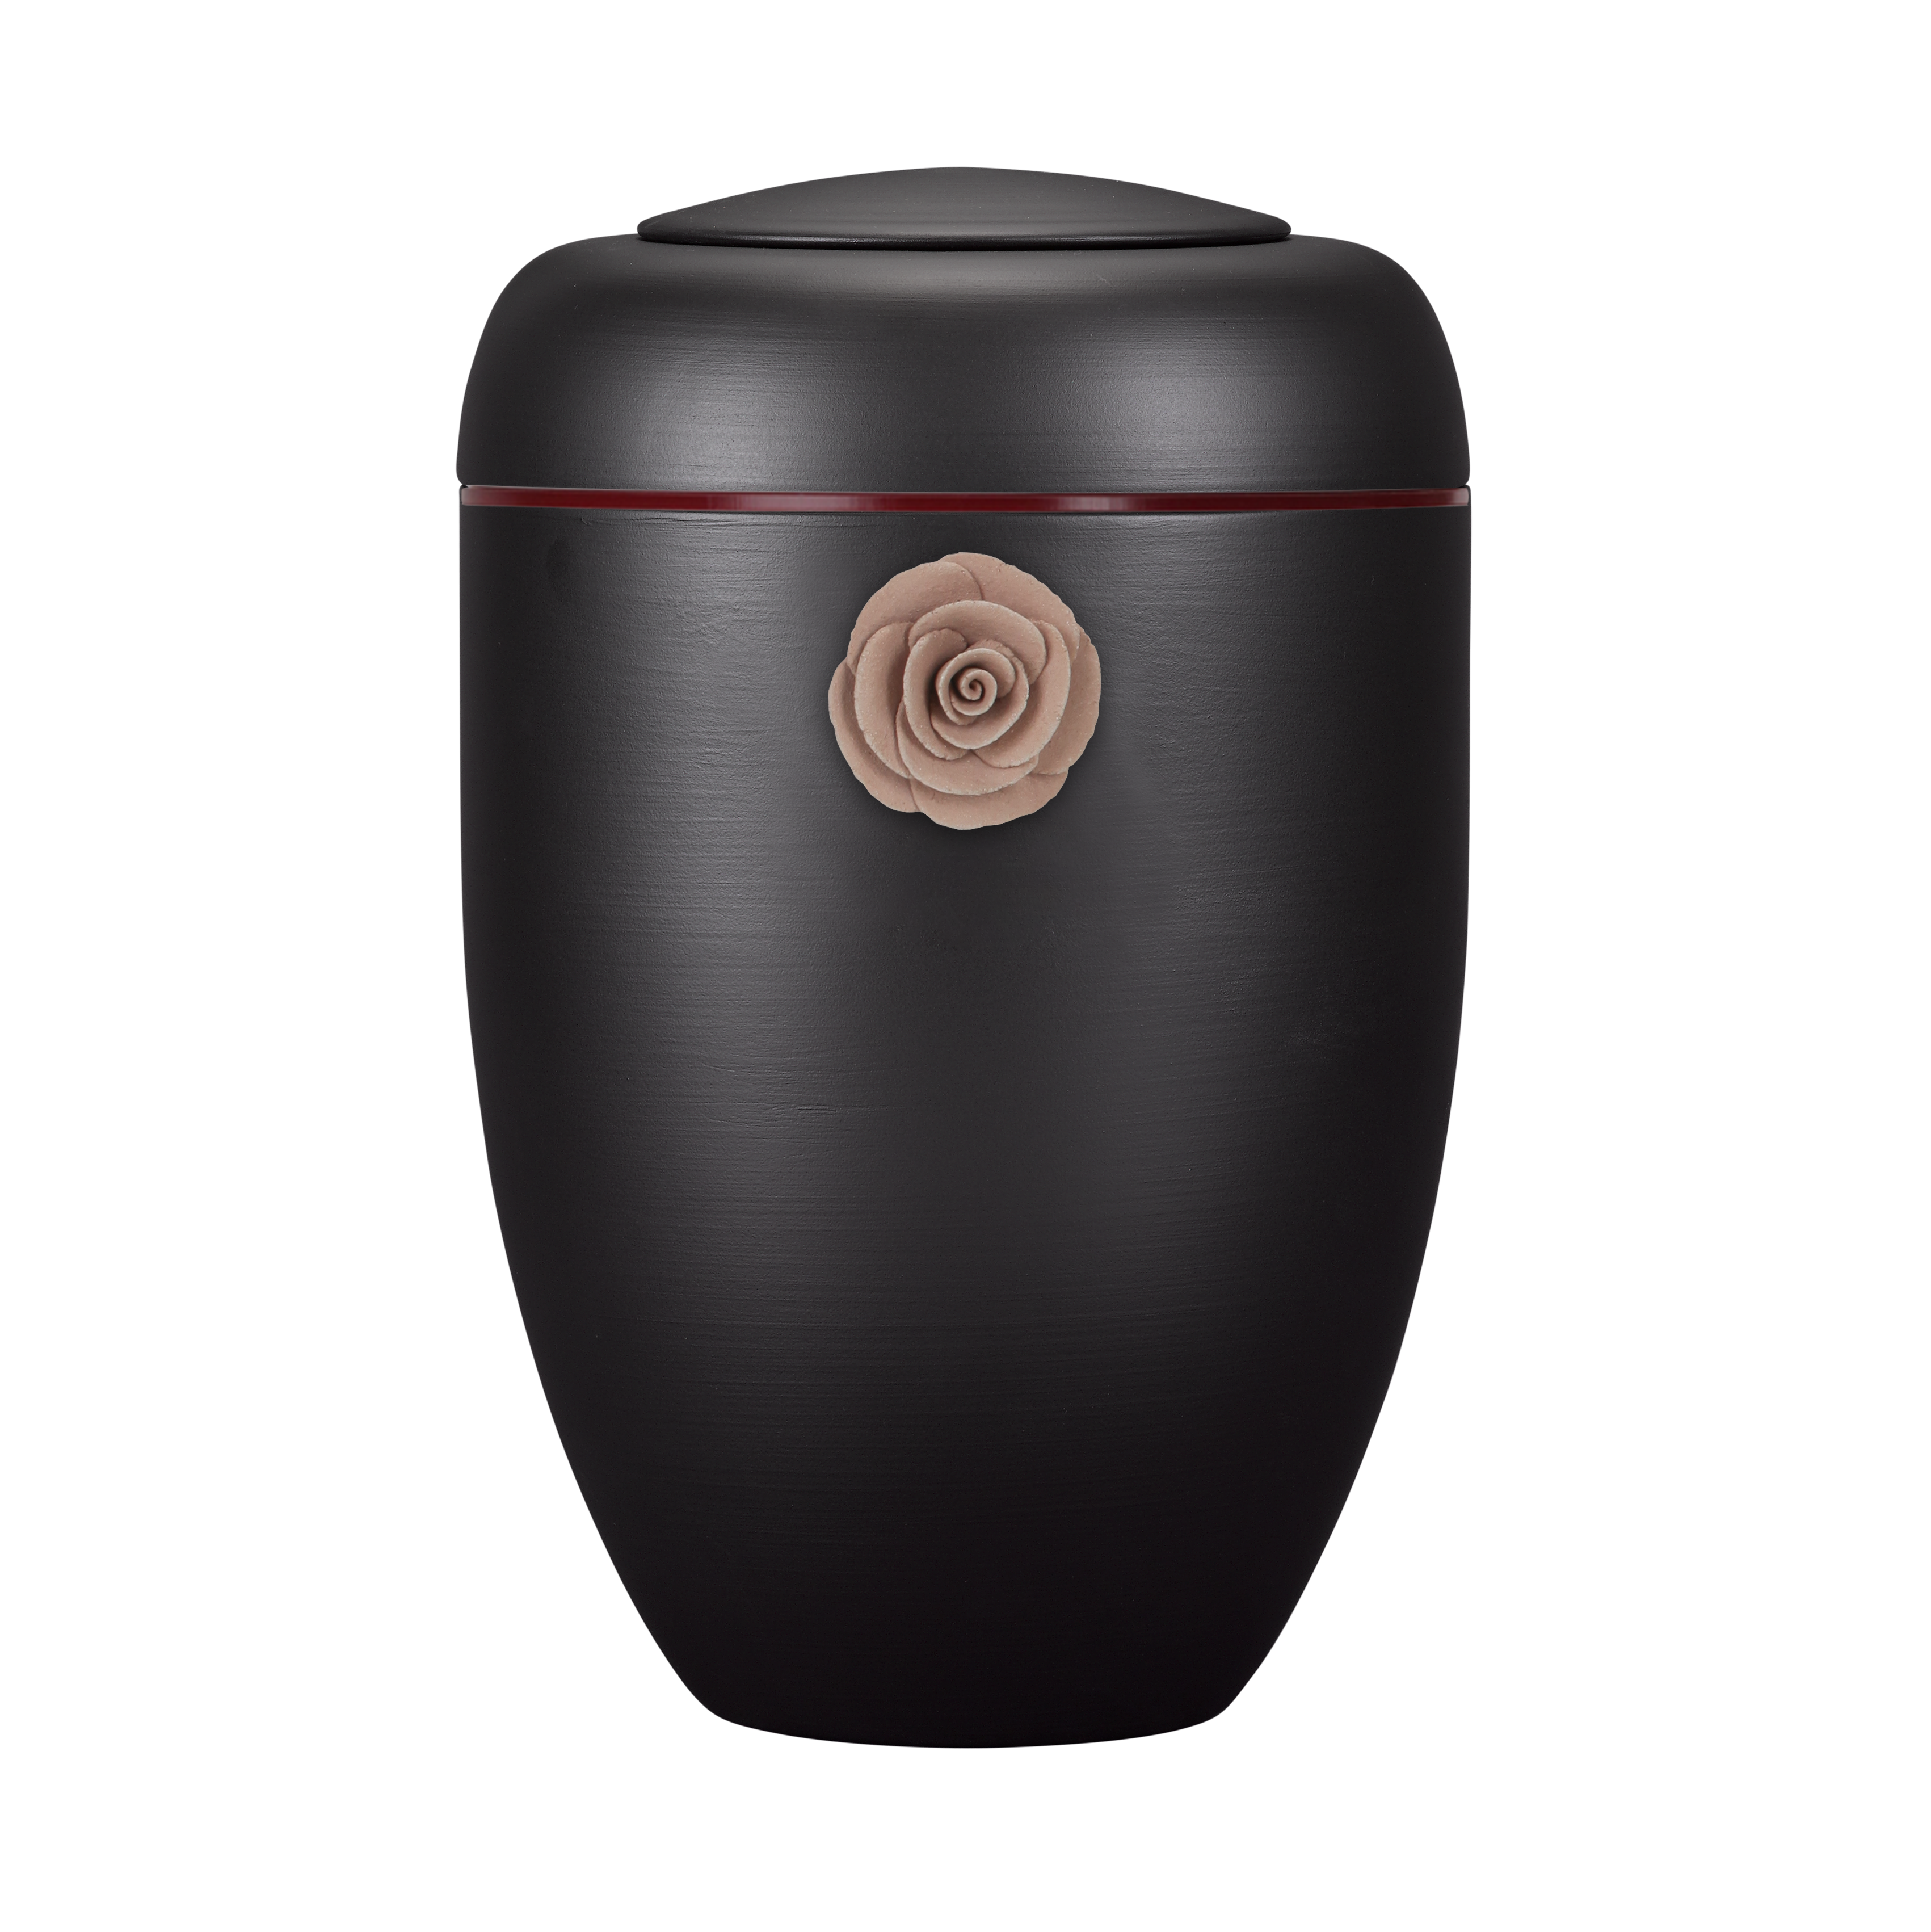 Schwarze Symbol-Urne mit roter Tonrose und roter Plexiglasscheibe